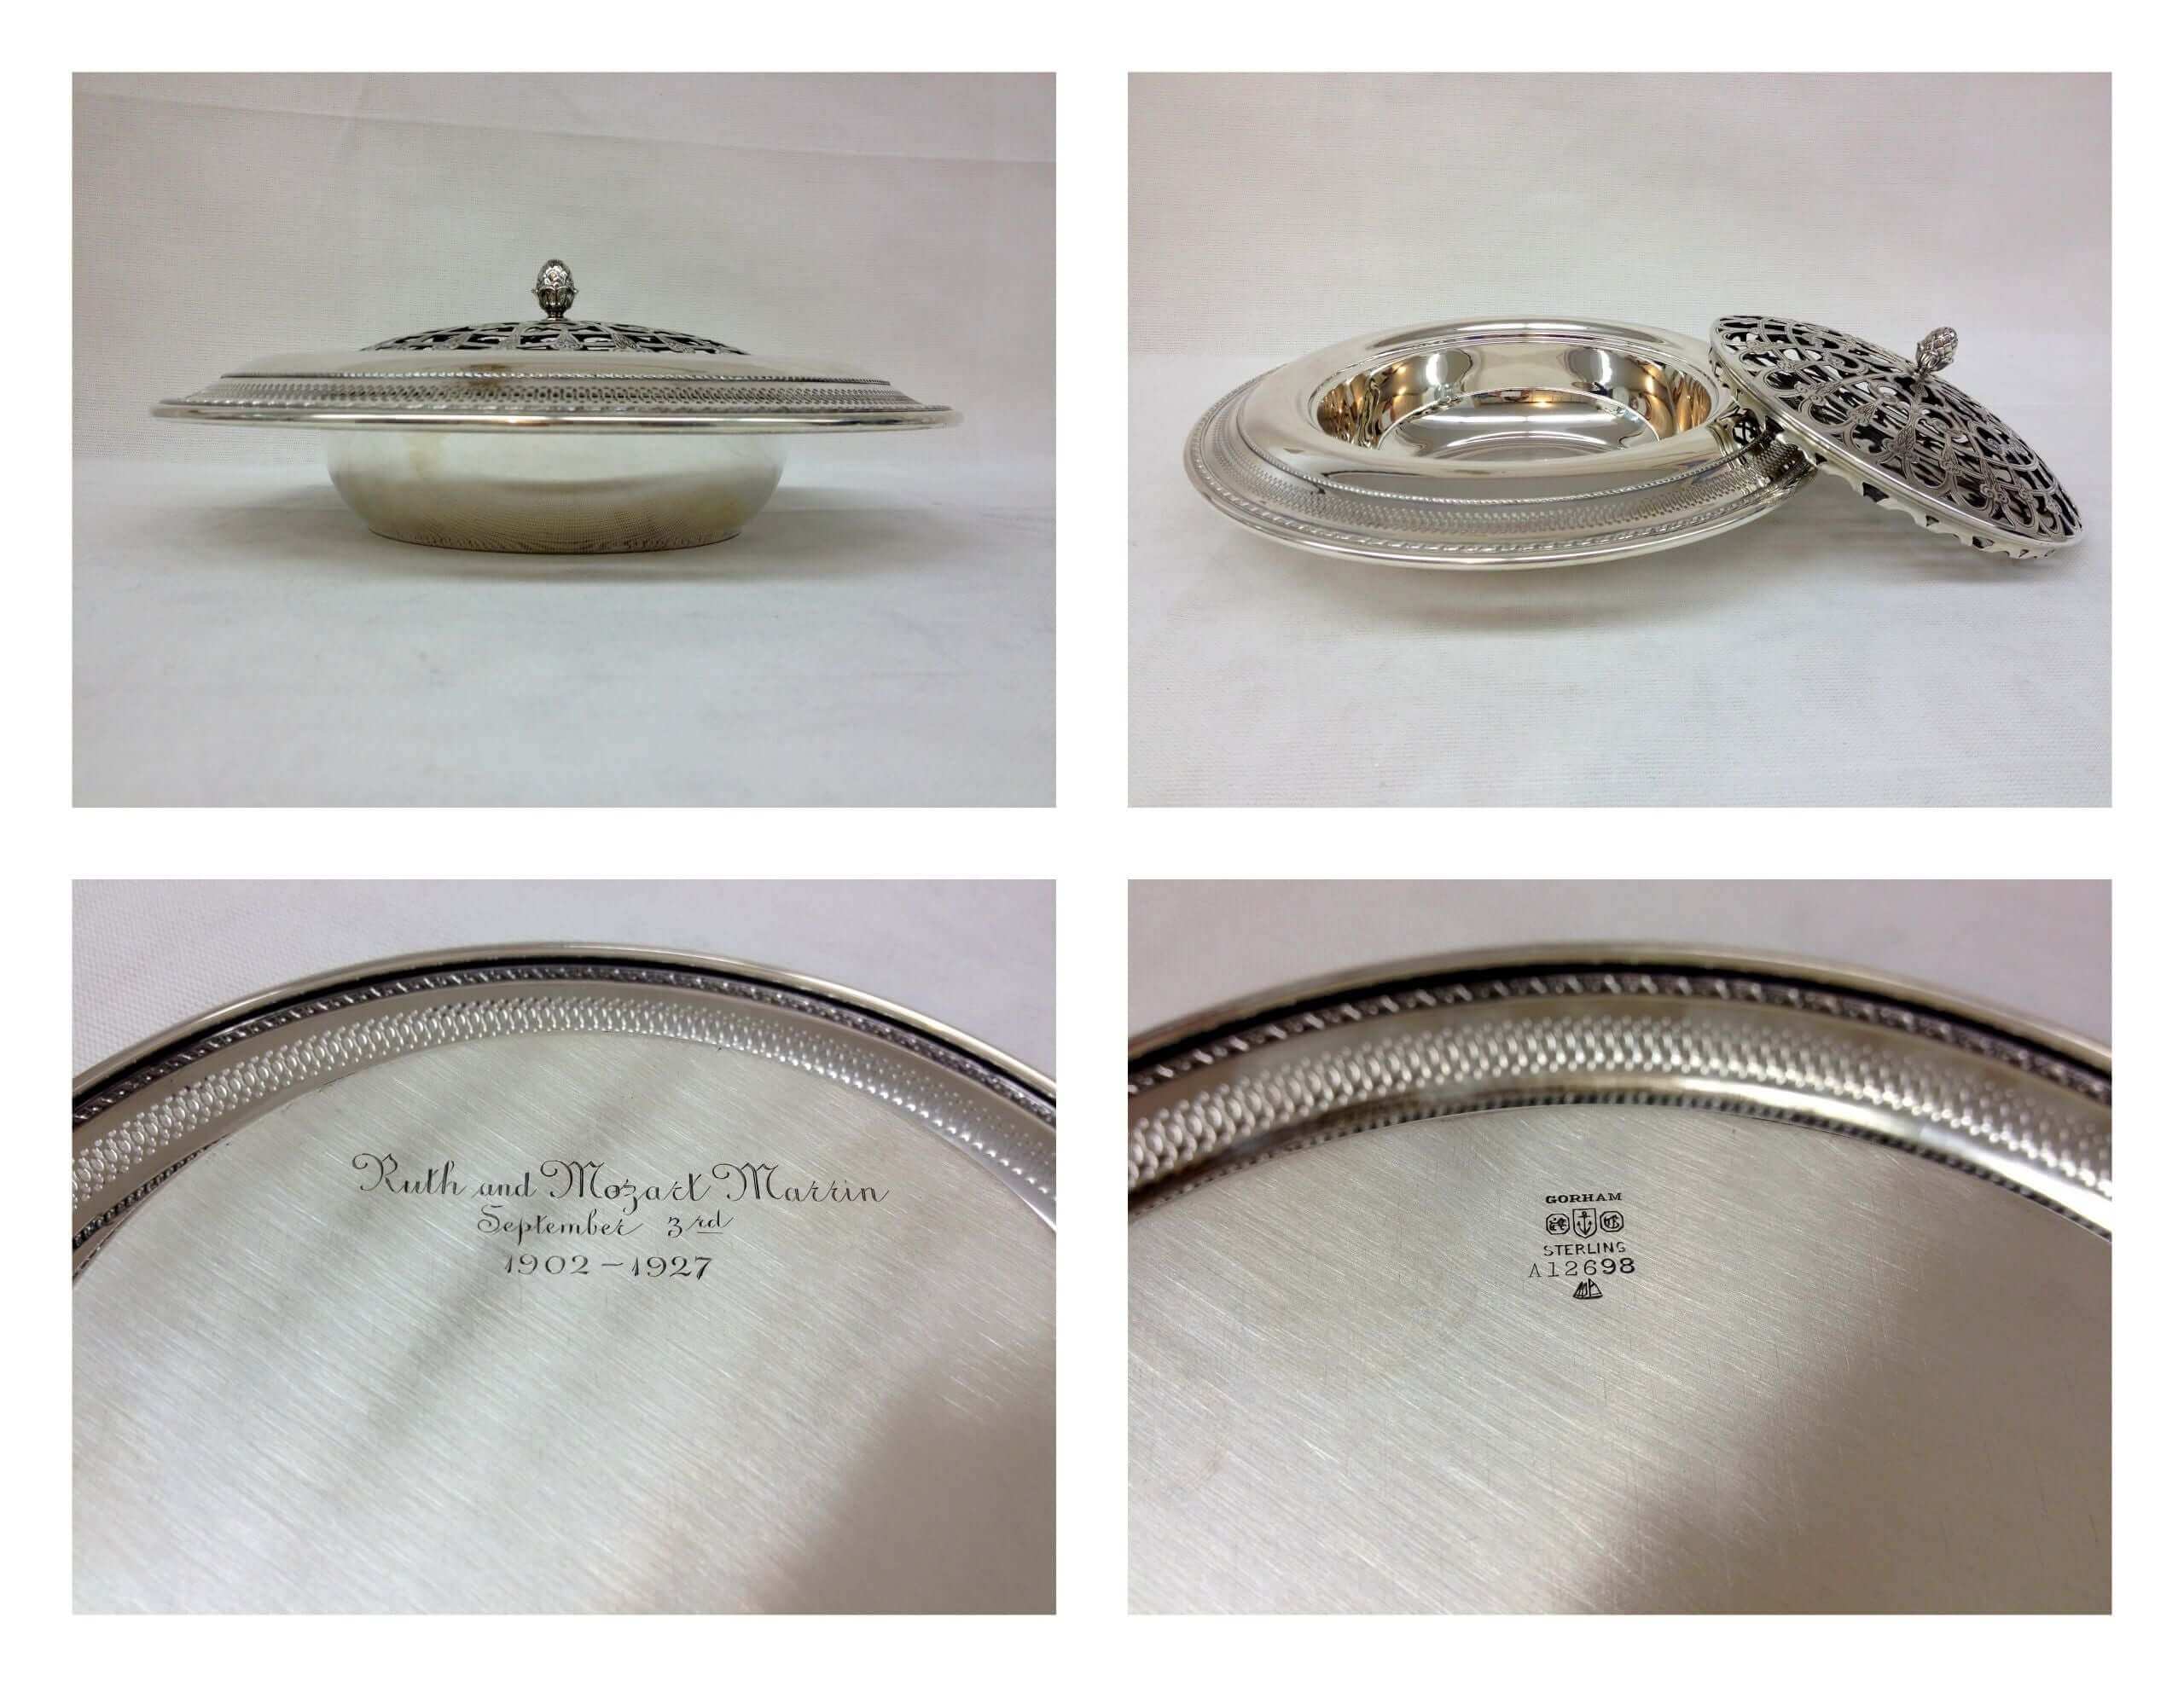 Vintage Silver Serving Tray A - Piece By Zion Hadad